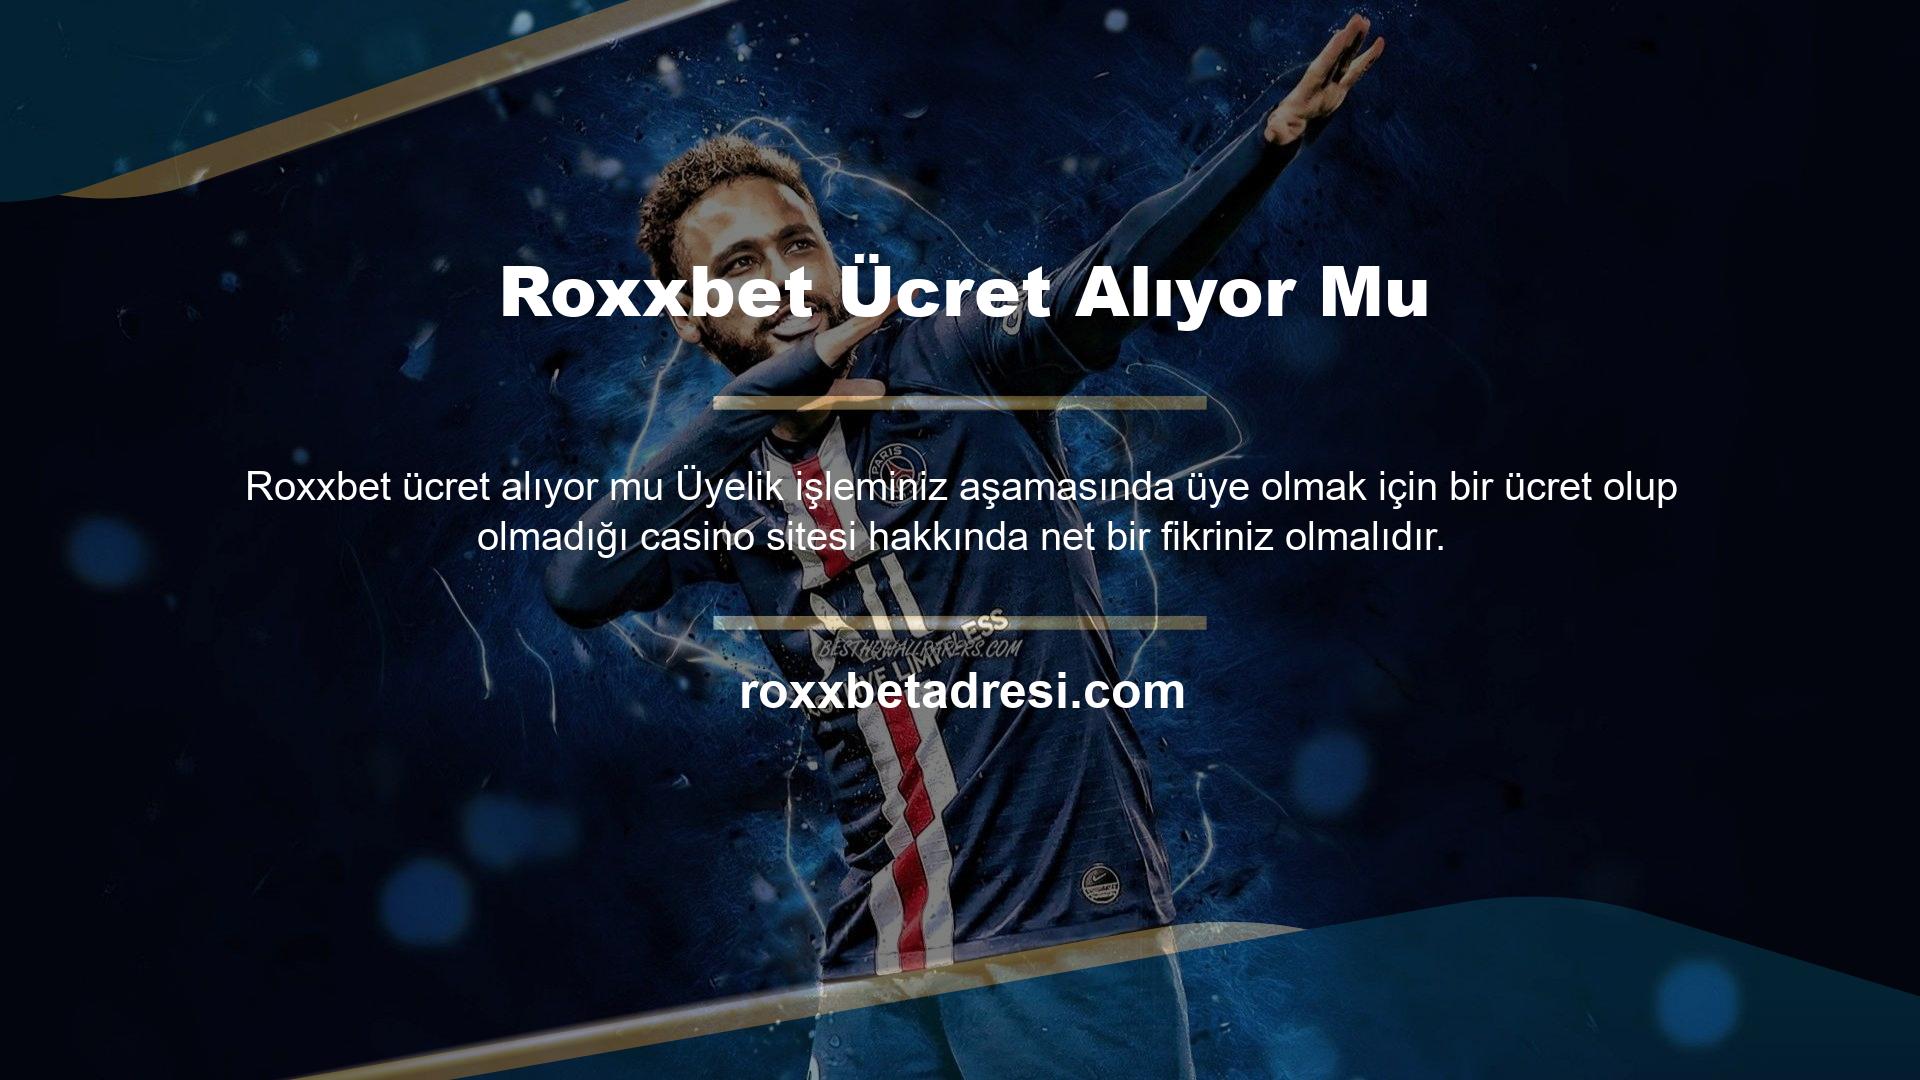 Roxxbet üye olmak ücretli mi? Bu site kayıt işlemi sırasında sizden herhangi bir ücret talep etmez